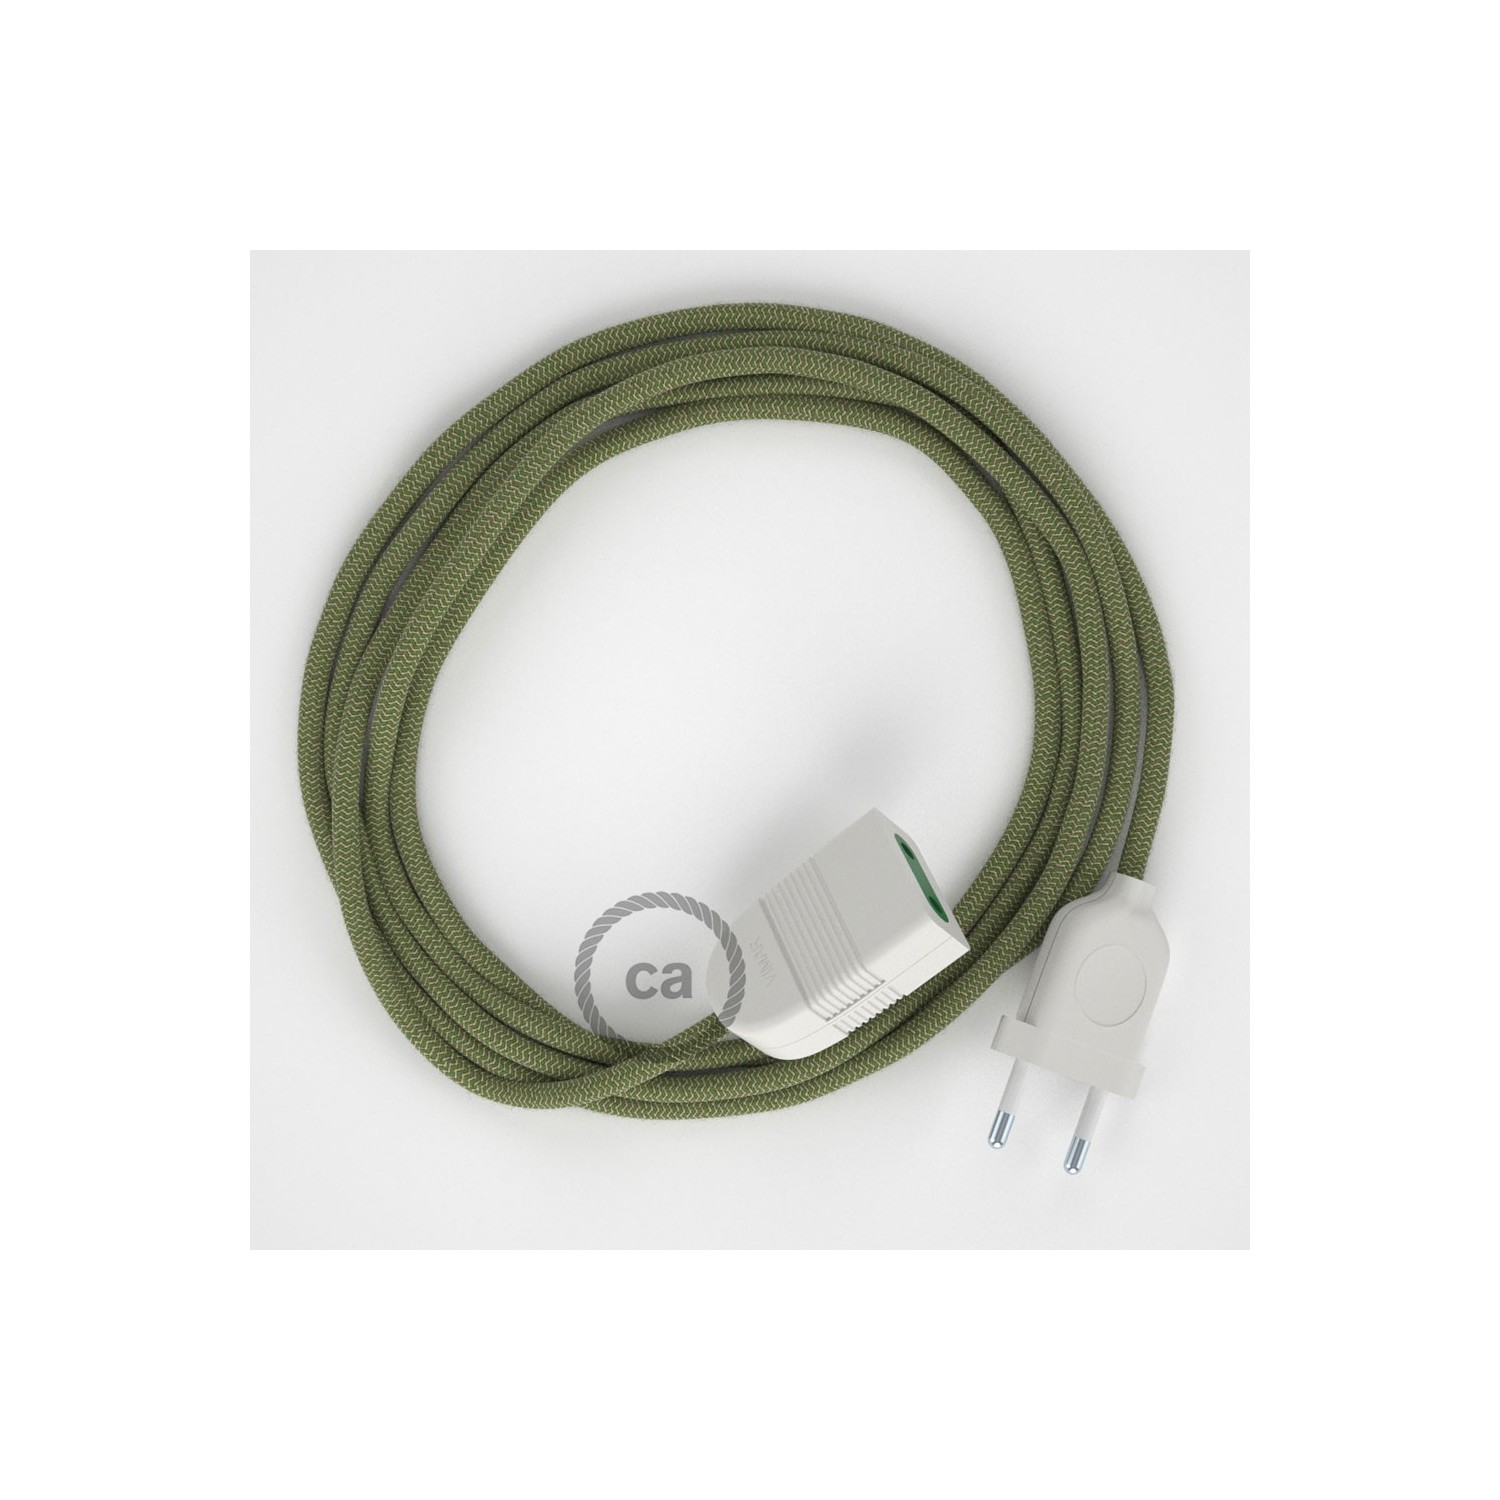 Rallonge électrique avec câble textile RD72 Coton et Lin Naturel ZigZag Vert Thym 2P 10A Made in Italy.